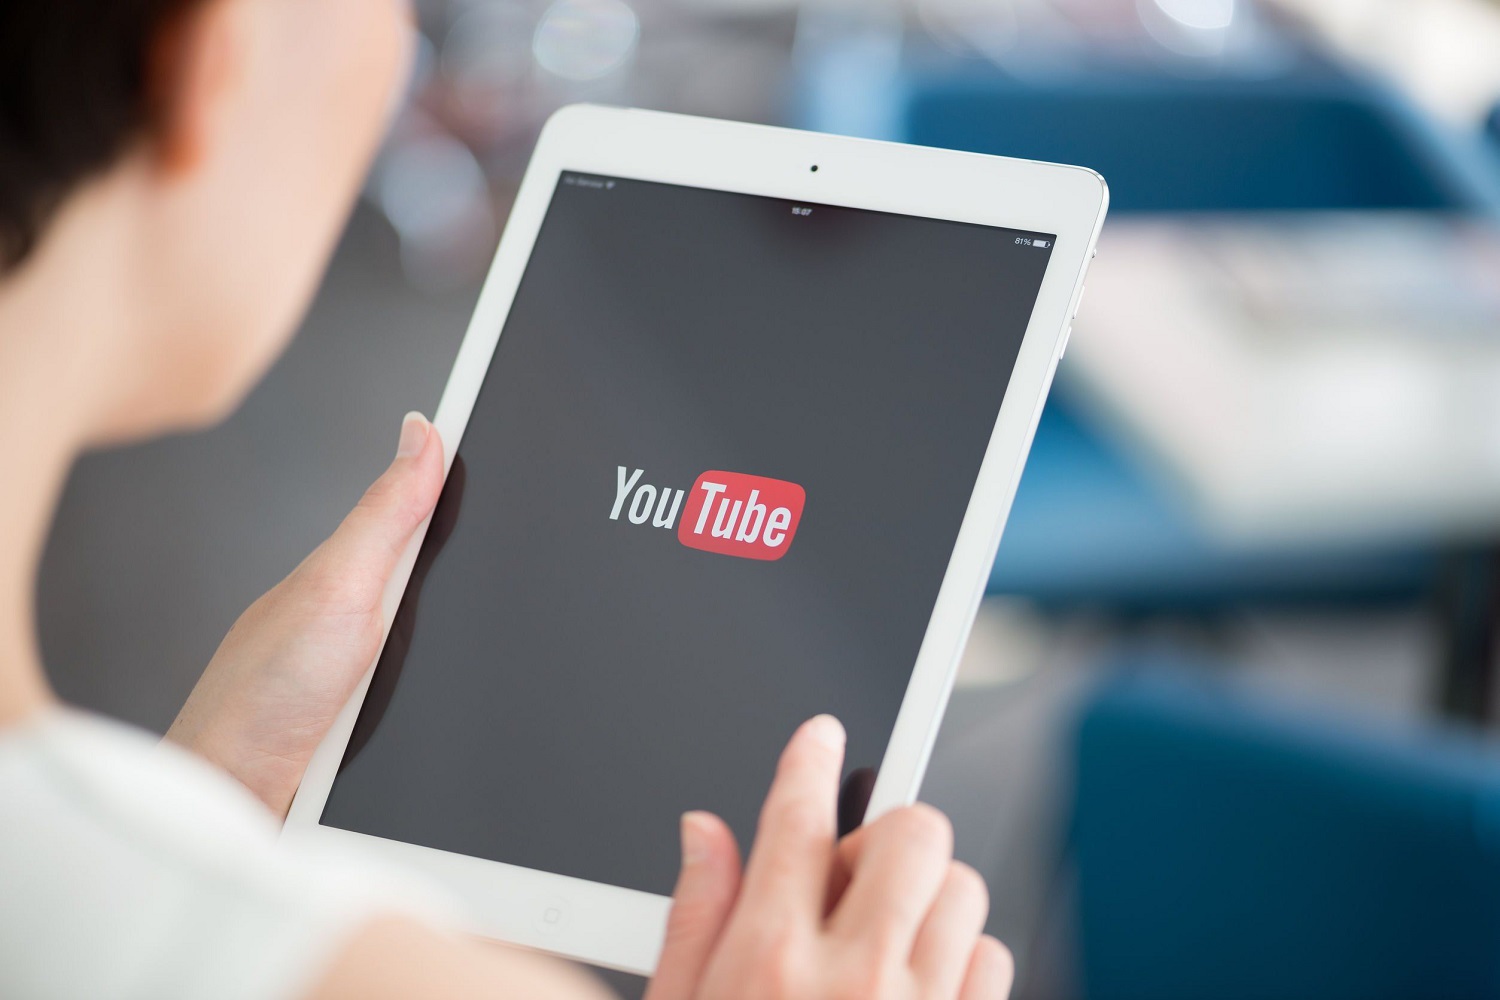 YouTube exibe vídeos com informações confiáveis sobre saúde